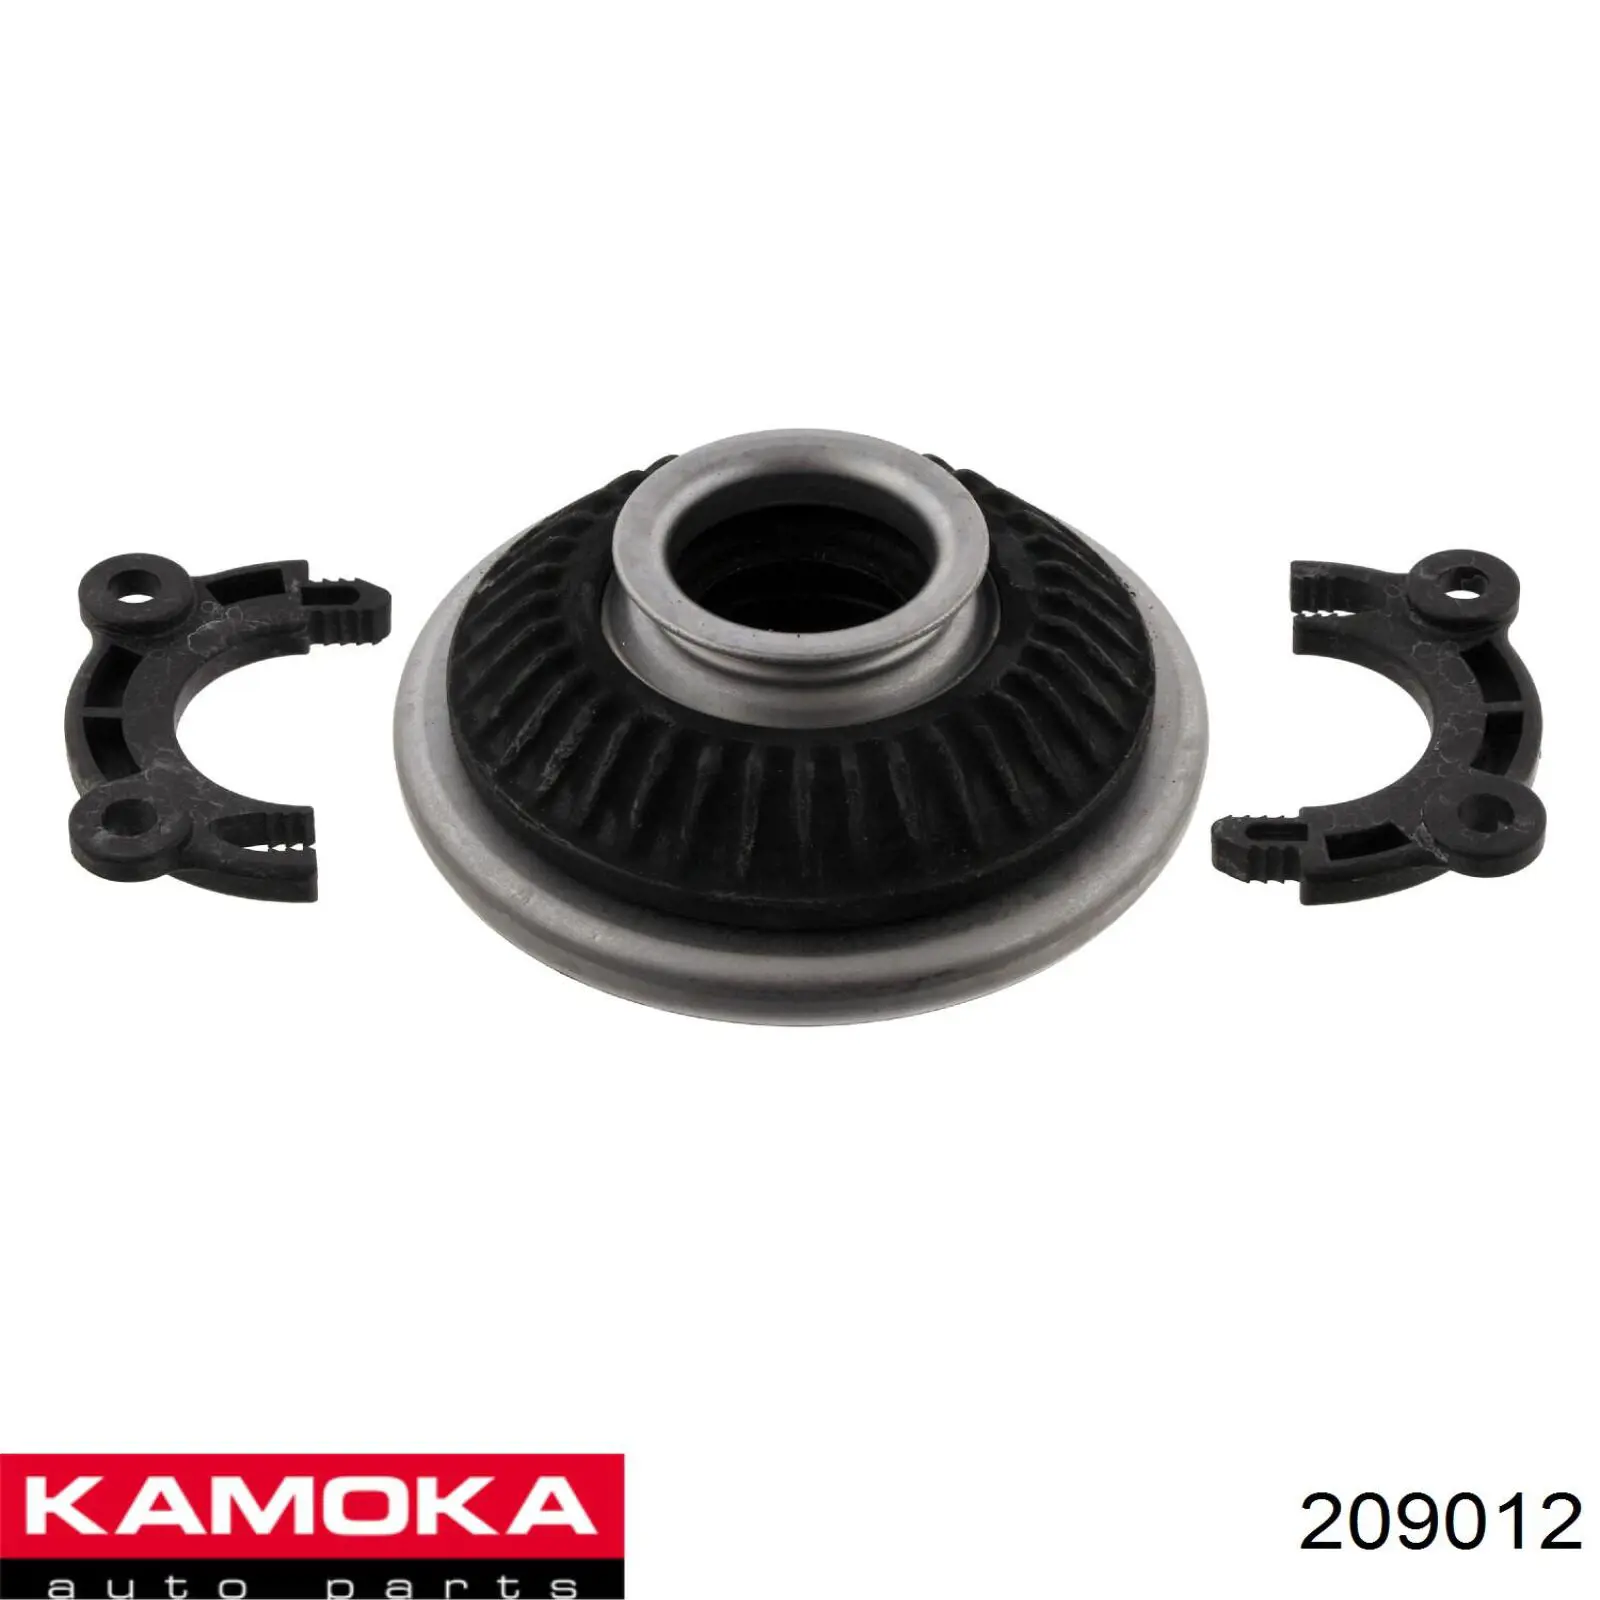 Опора амортизатора переднего Kamoka 209012